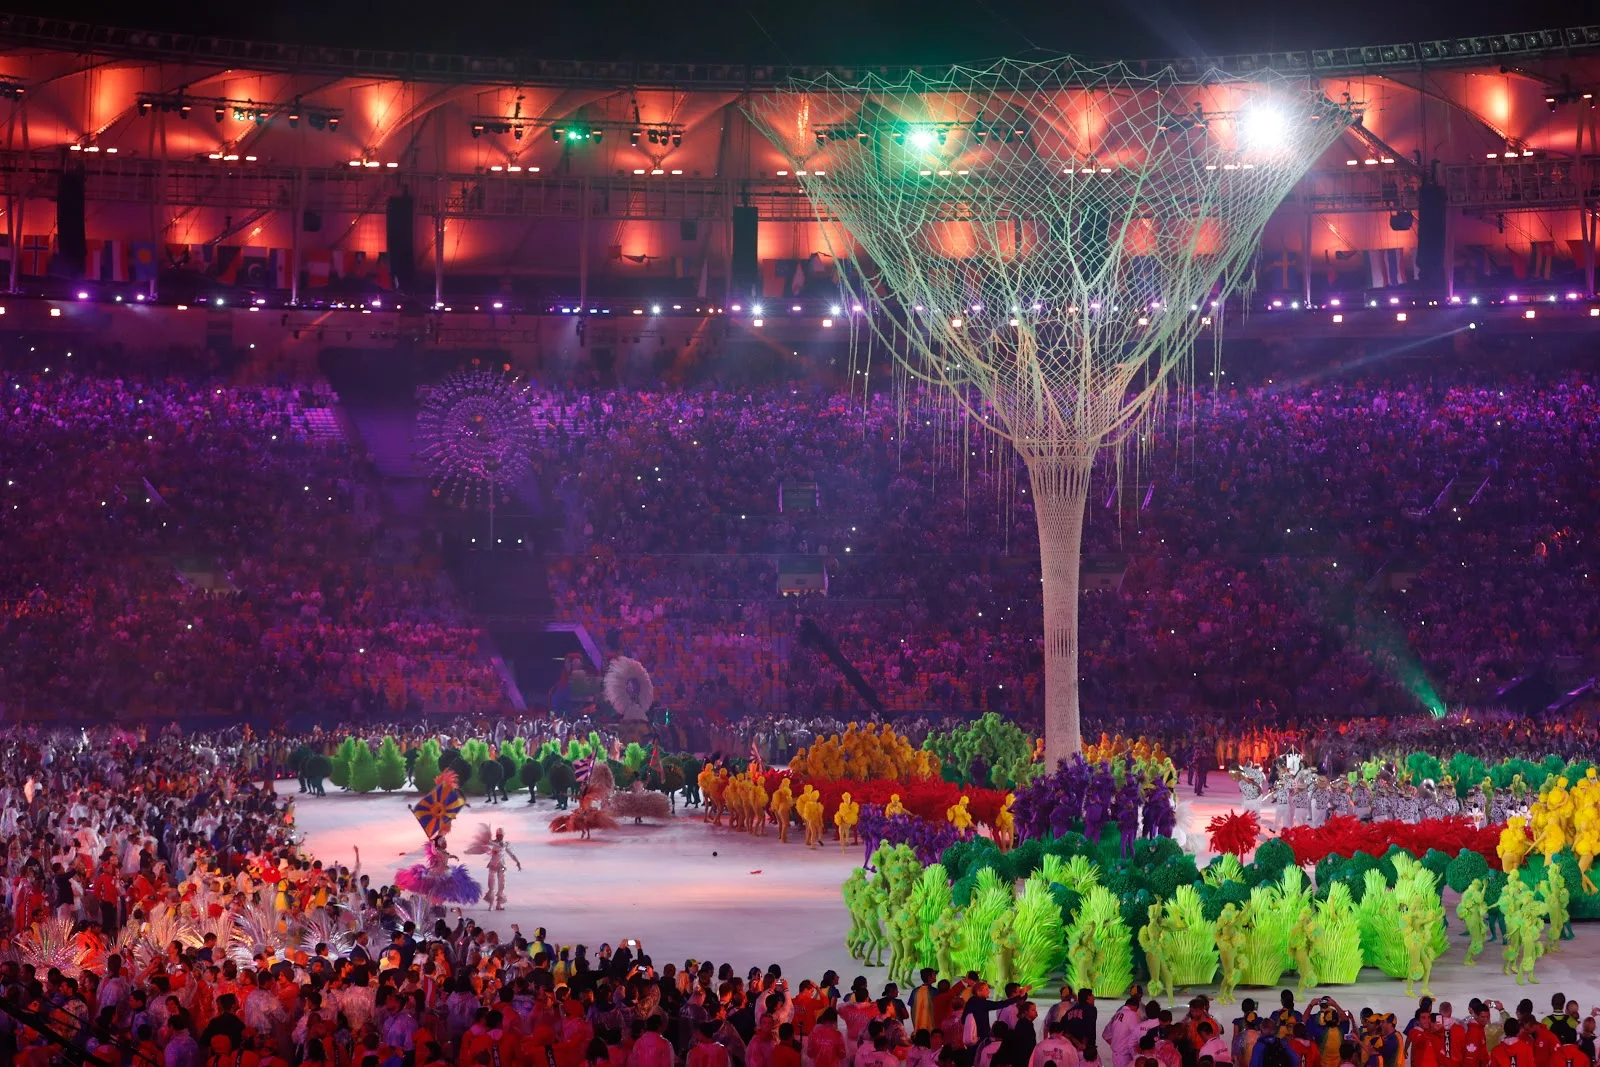 2016年のリオデジャネイロオリンピックの閉会式で夜のメインスタジアムに巨木のオブジェが神秘的に幻想的に立てられている